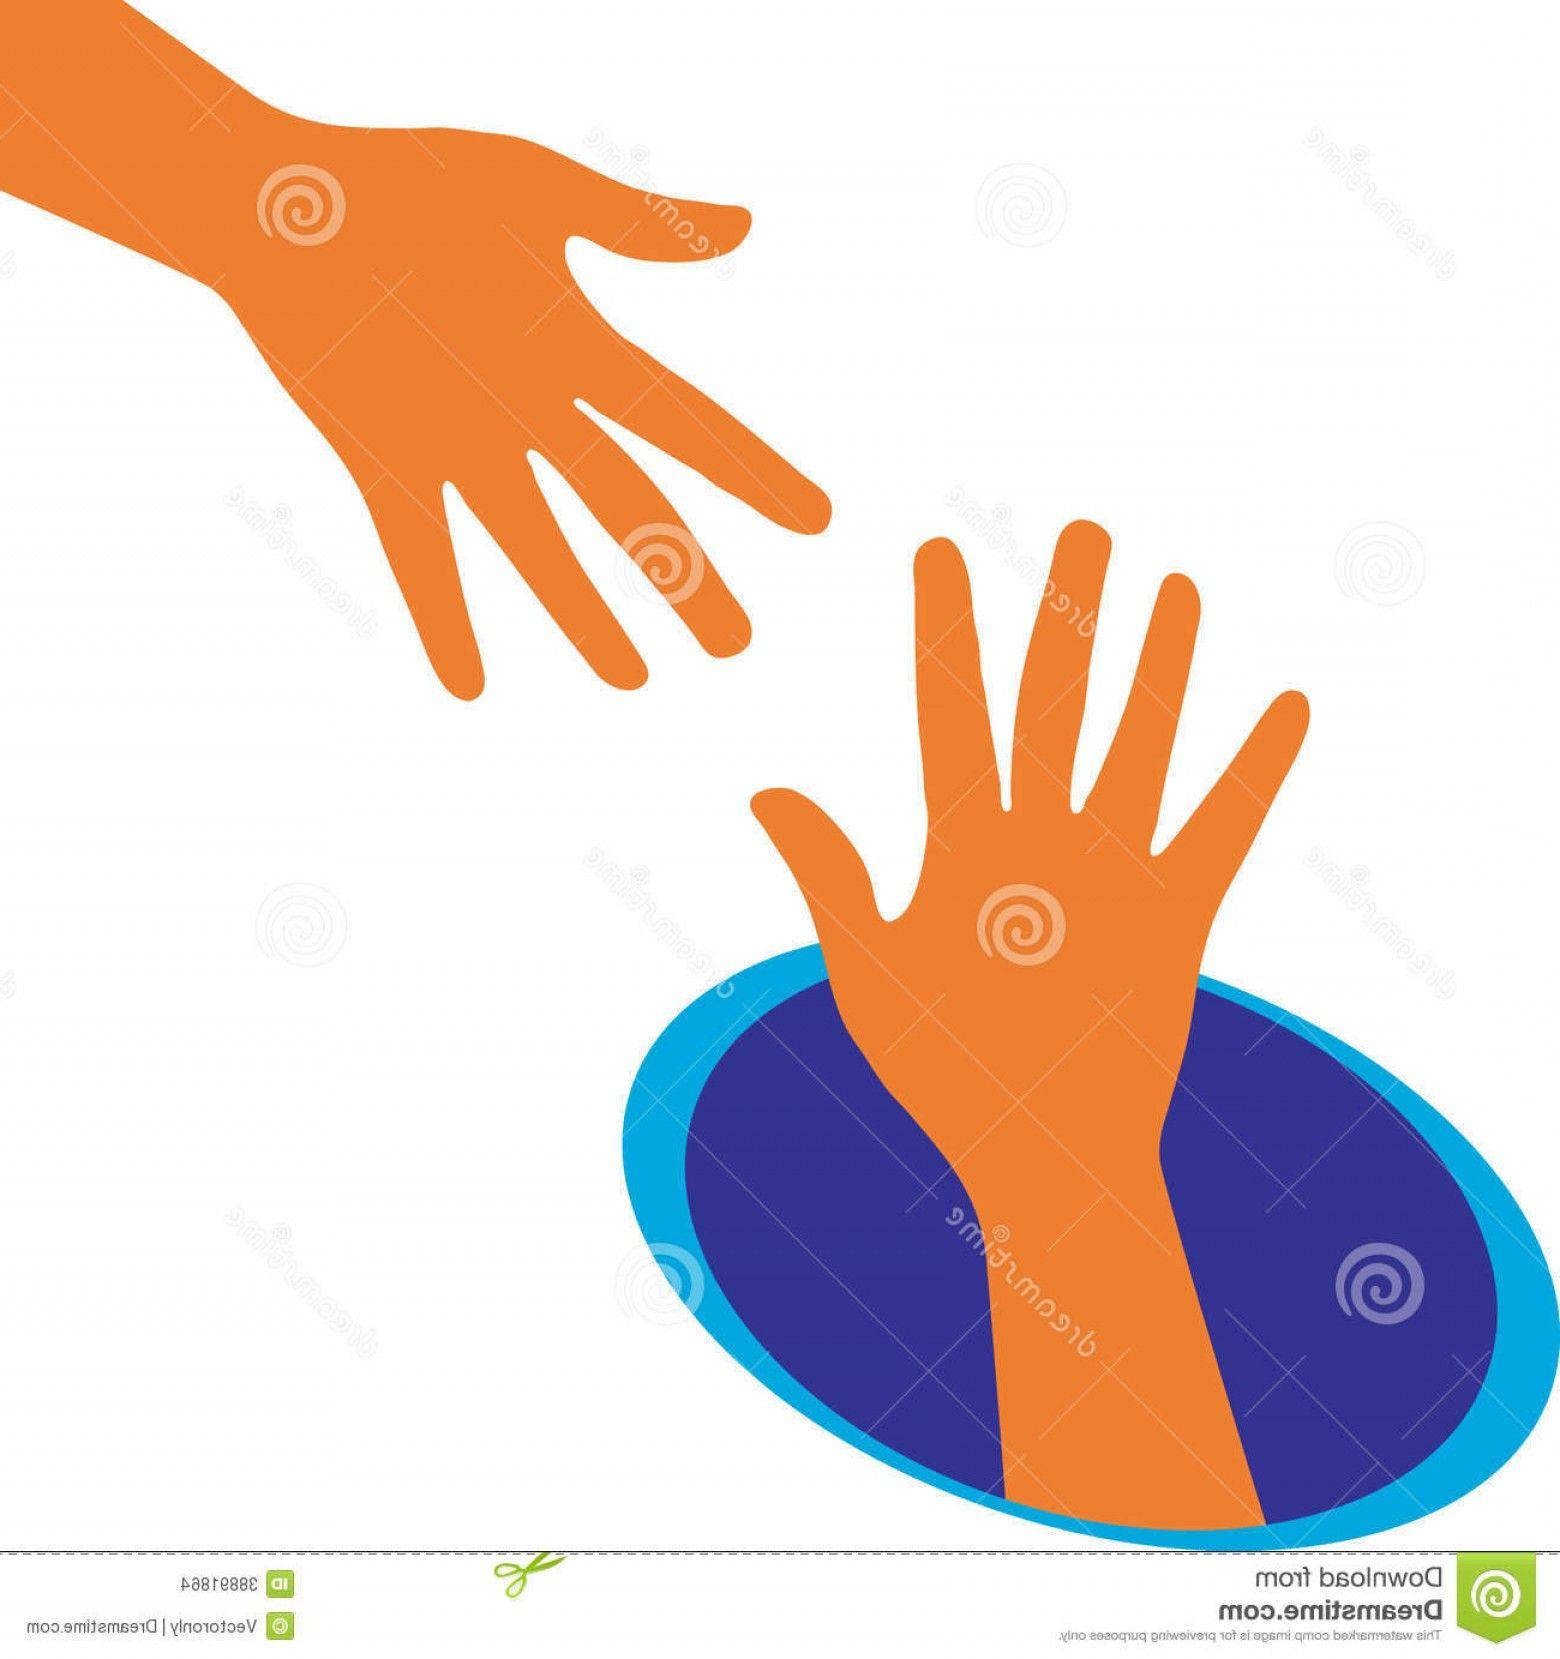 Orange Hands Logo - Stock Images Helping Hand Vector Illustration Hands Logo Image ...